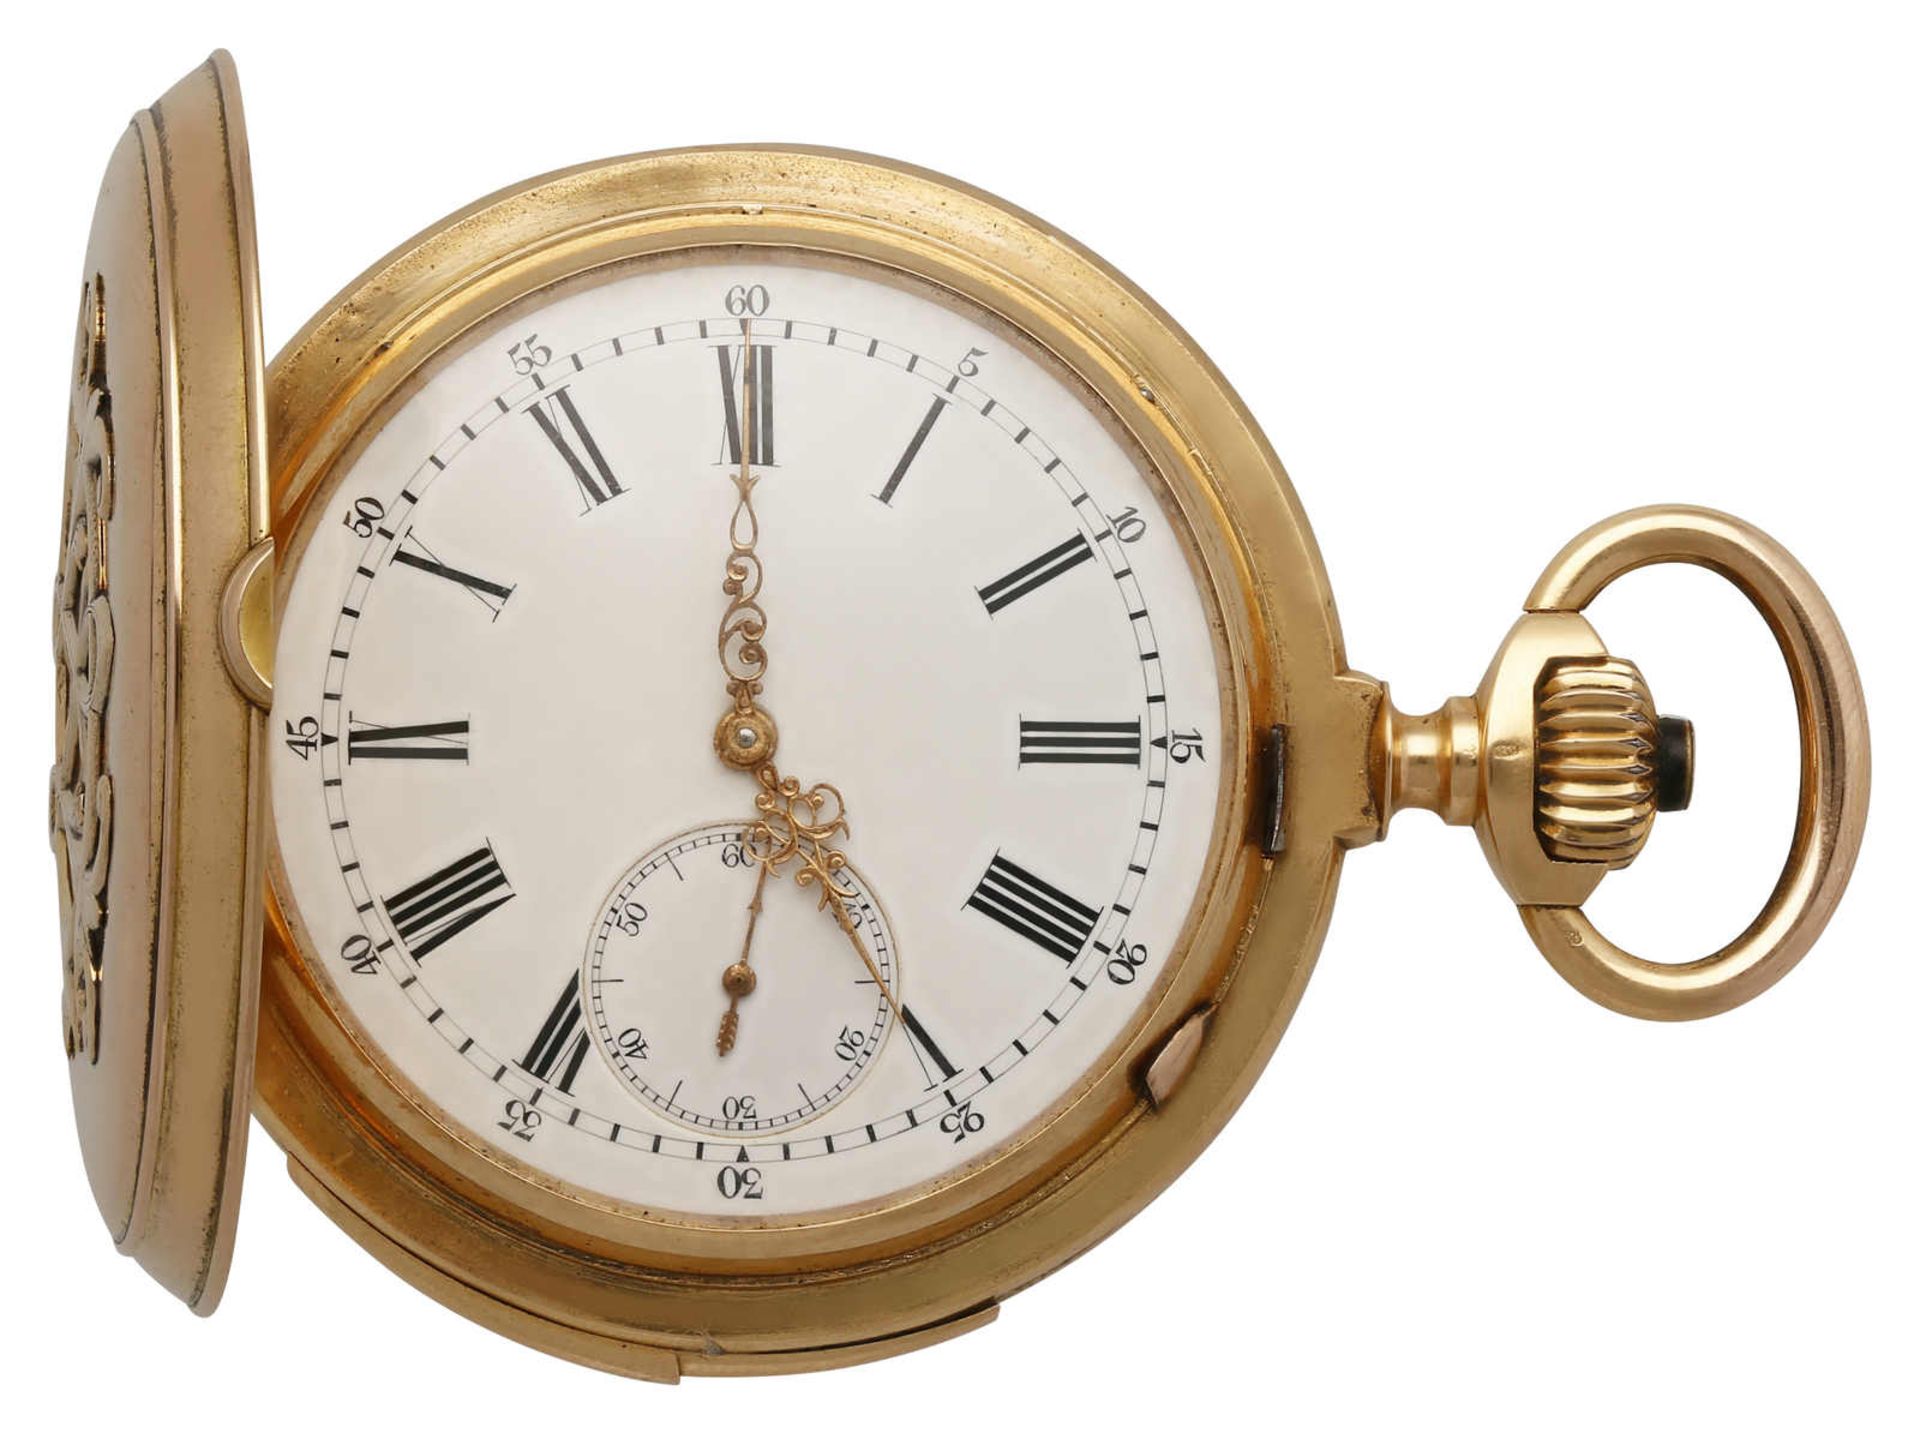 Taschenuhr Taschenuhr in Roségold 18K. Uhrwerk Handaufzug mit Minutenrepetition, weissem Email-